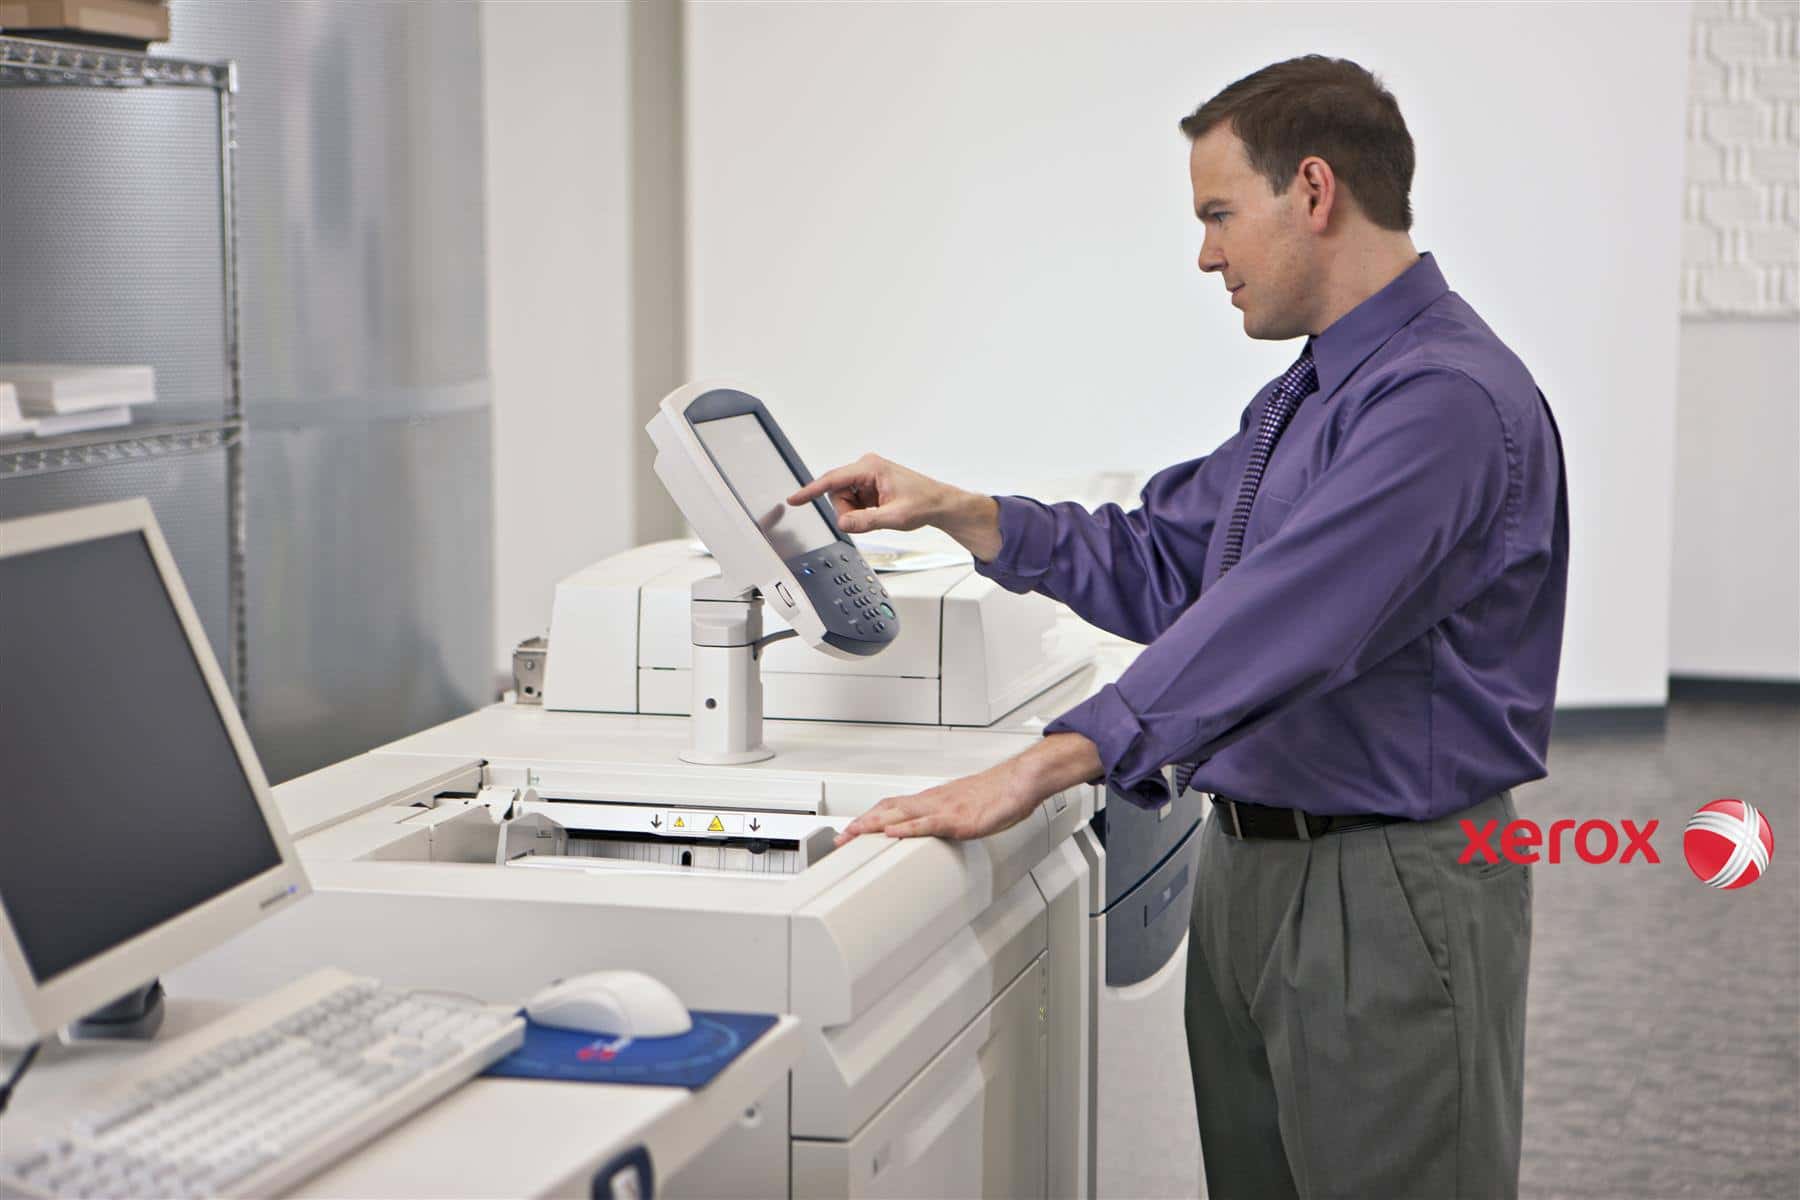 Vsid copied. Оргтехника для офиса. Принтер в офисе. Печатная техника. Принтер Xerox в офисе.